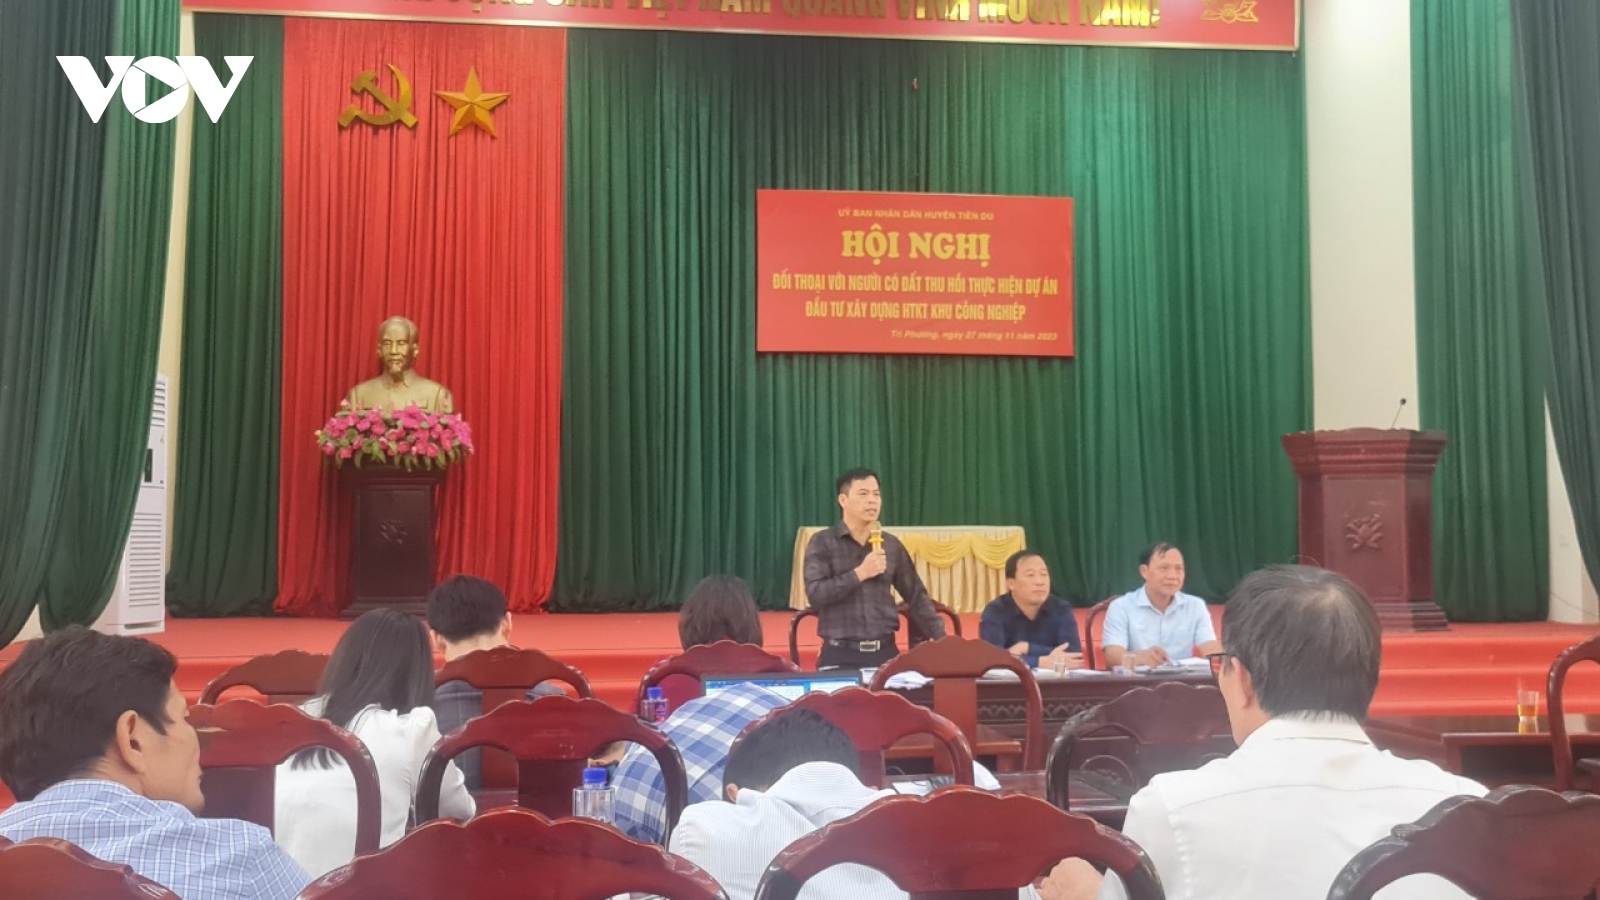 Bắc Ninh đối thoại với người dân về dự án KCN Đại Đồng - Hoàn Sơn giai đoạn II